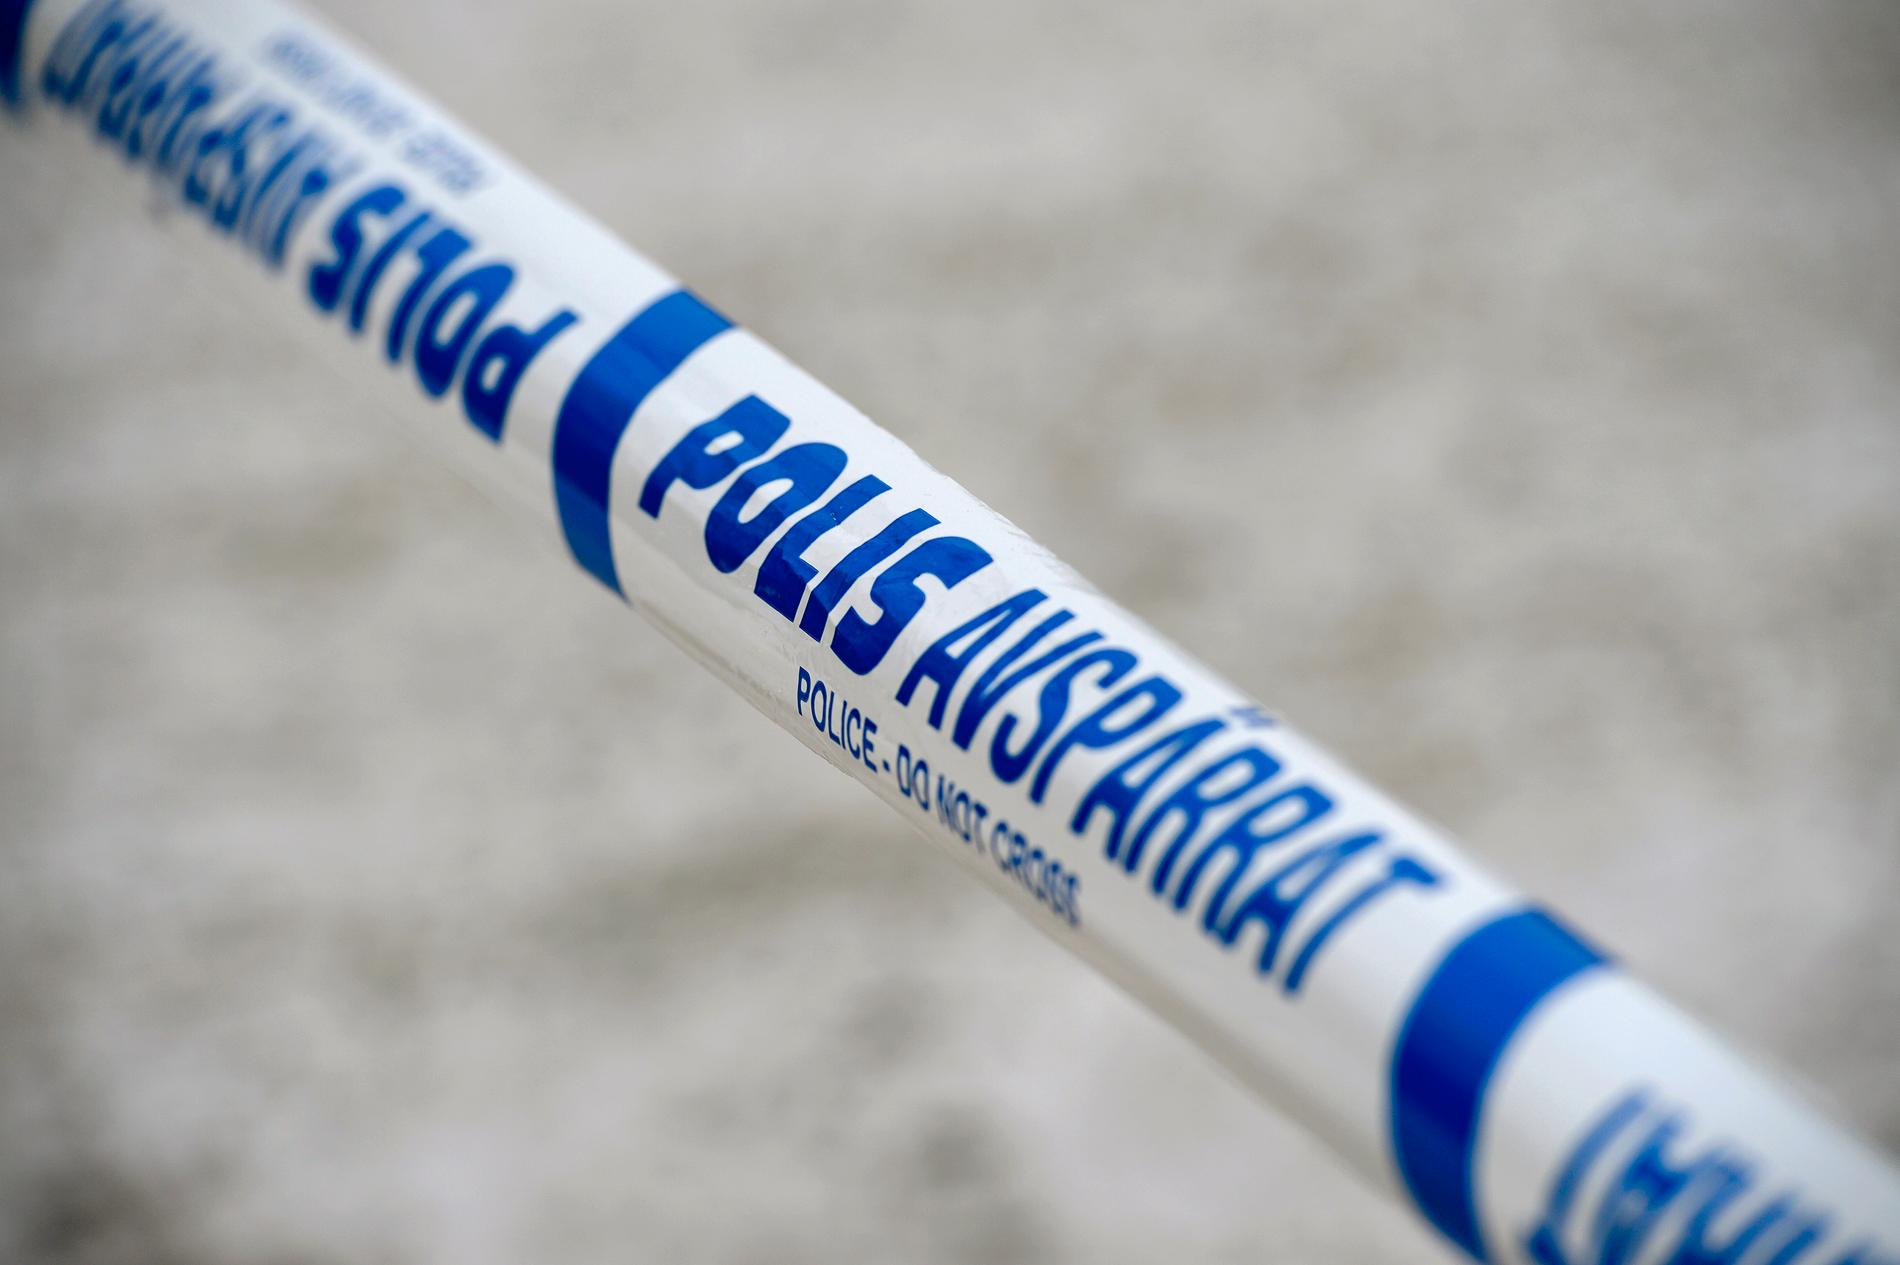 Två personer har häktats efter att en man hittats död i Grängesberg i Ludvika kommun. Arkivbild.